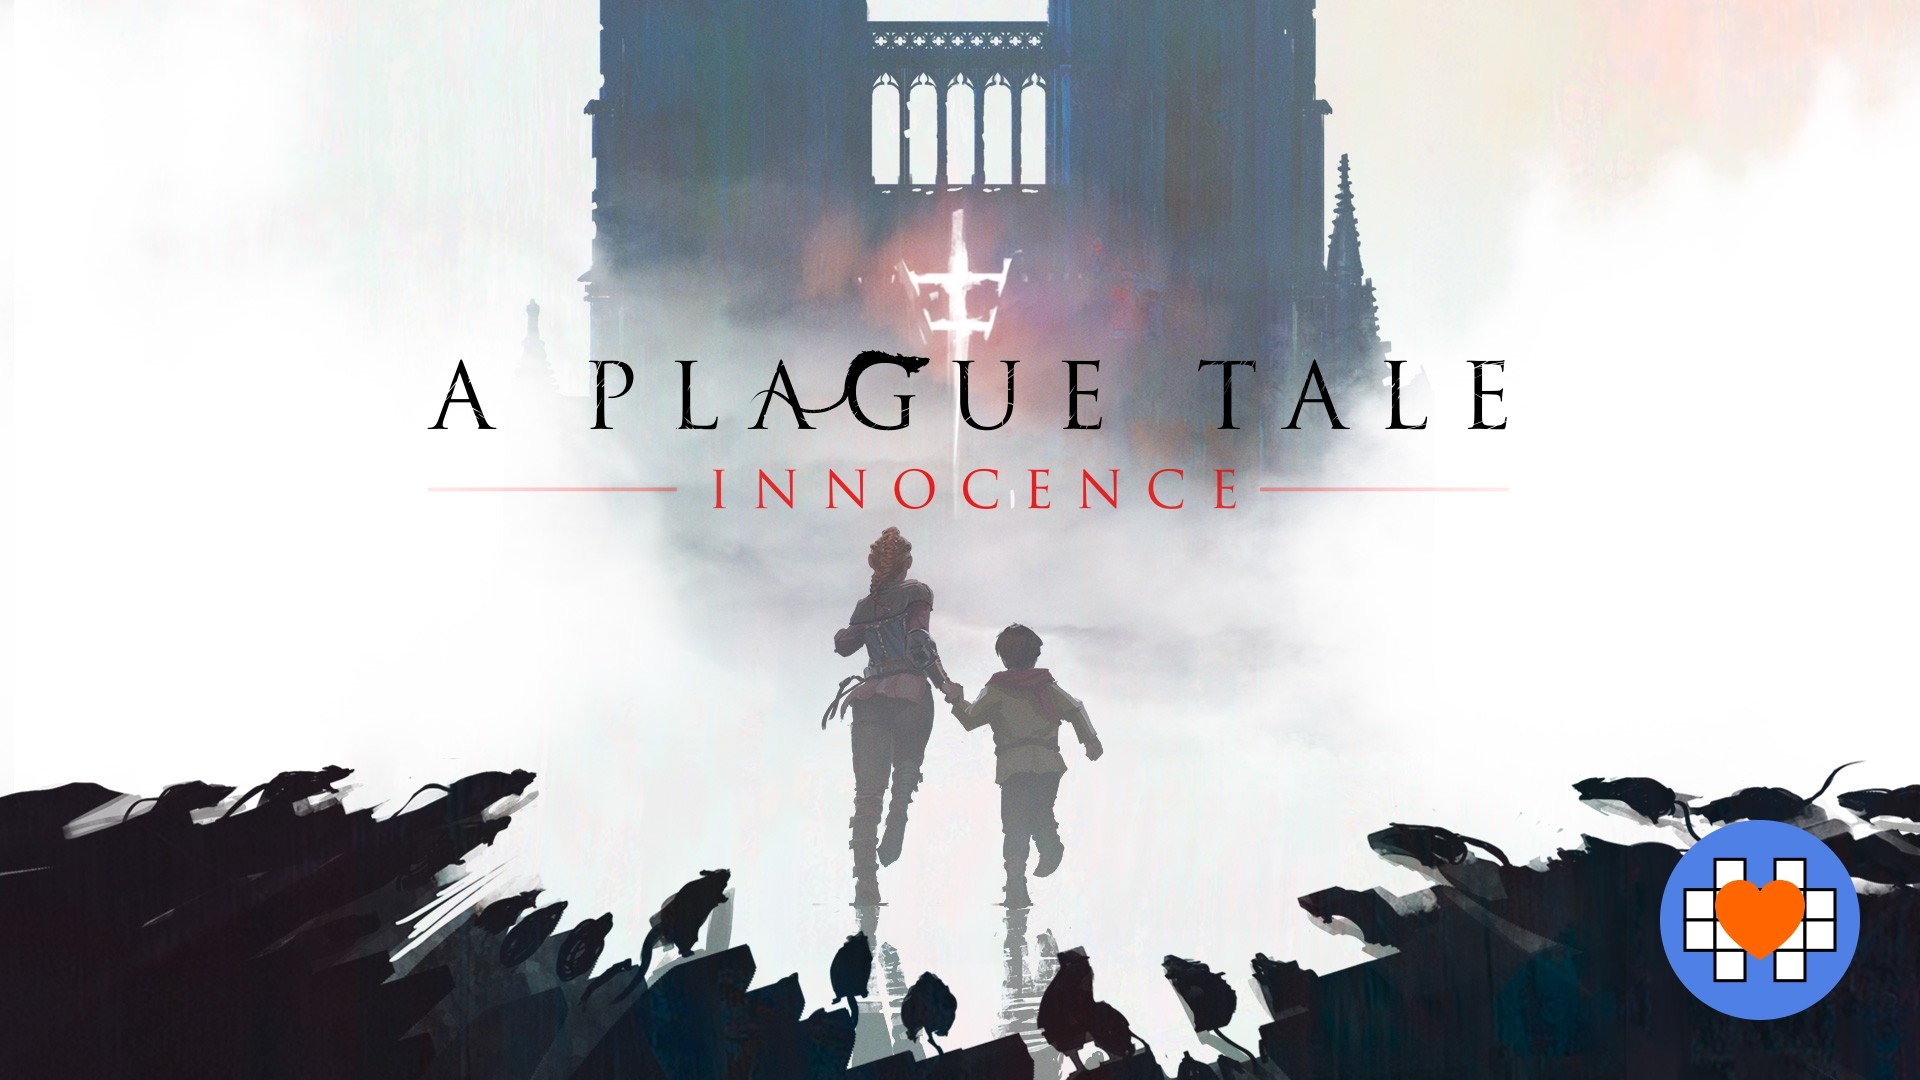 A Plague Tale: Innocence - Accolades Trailer